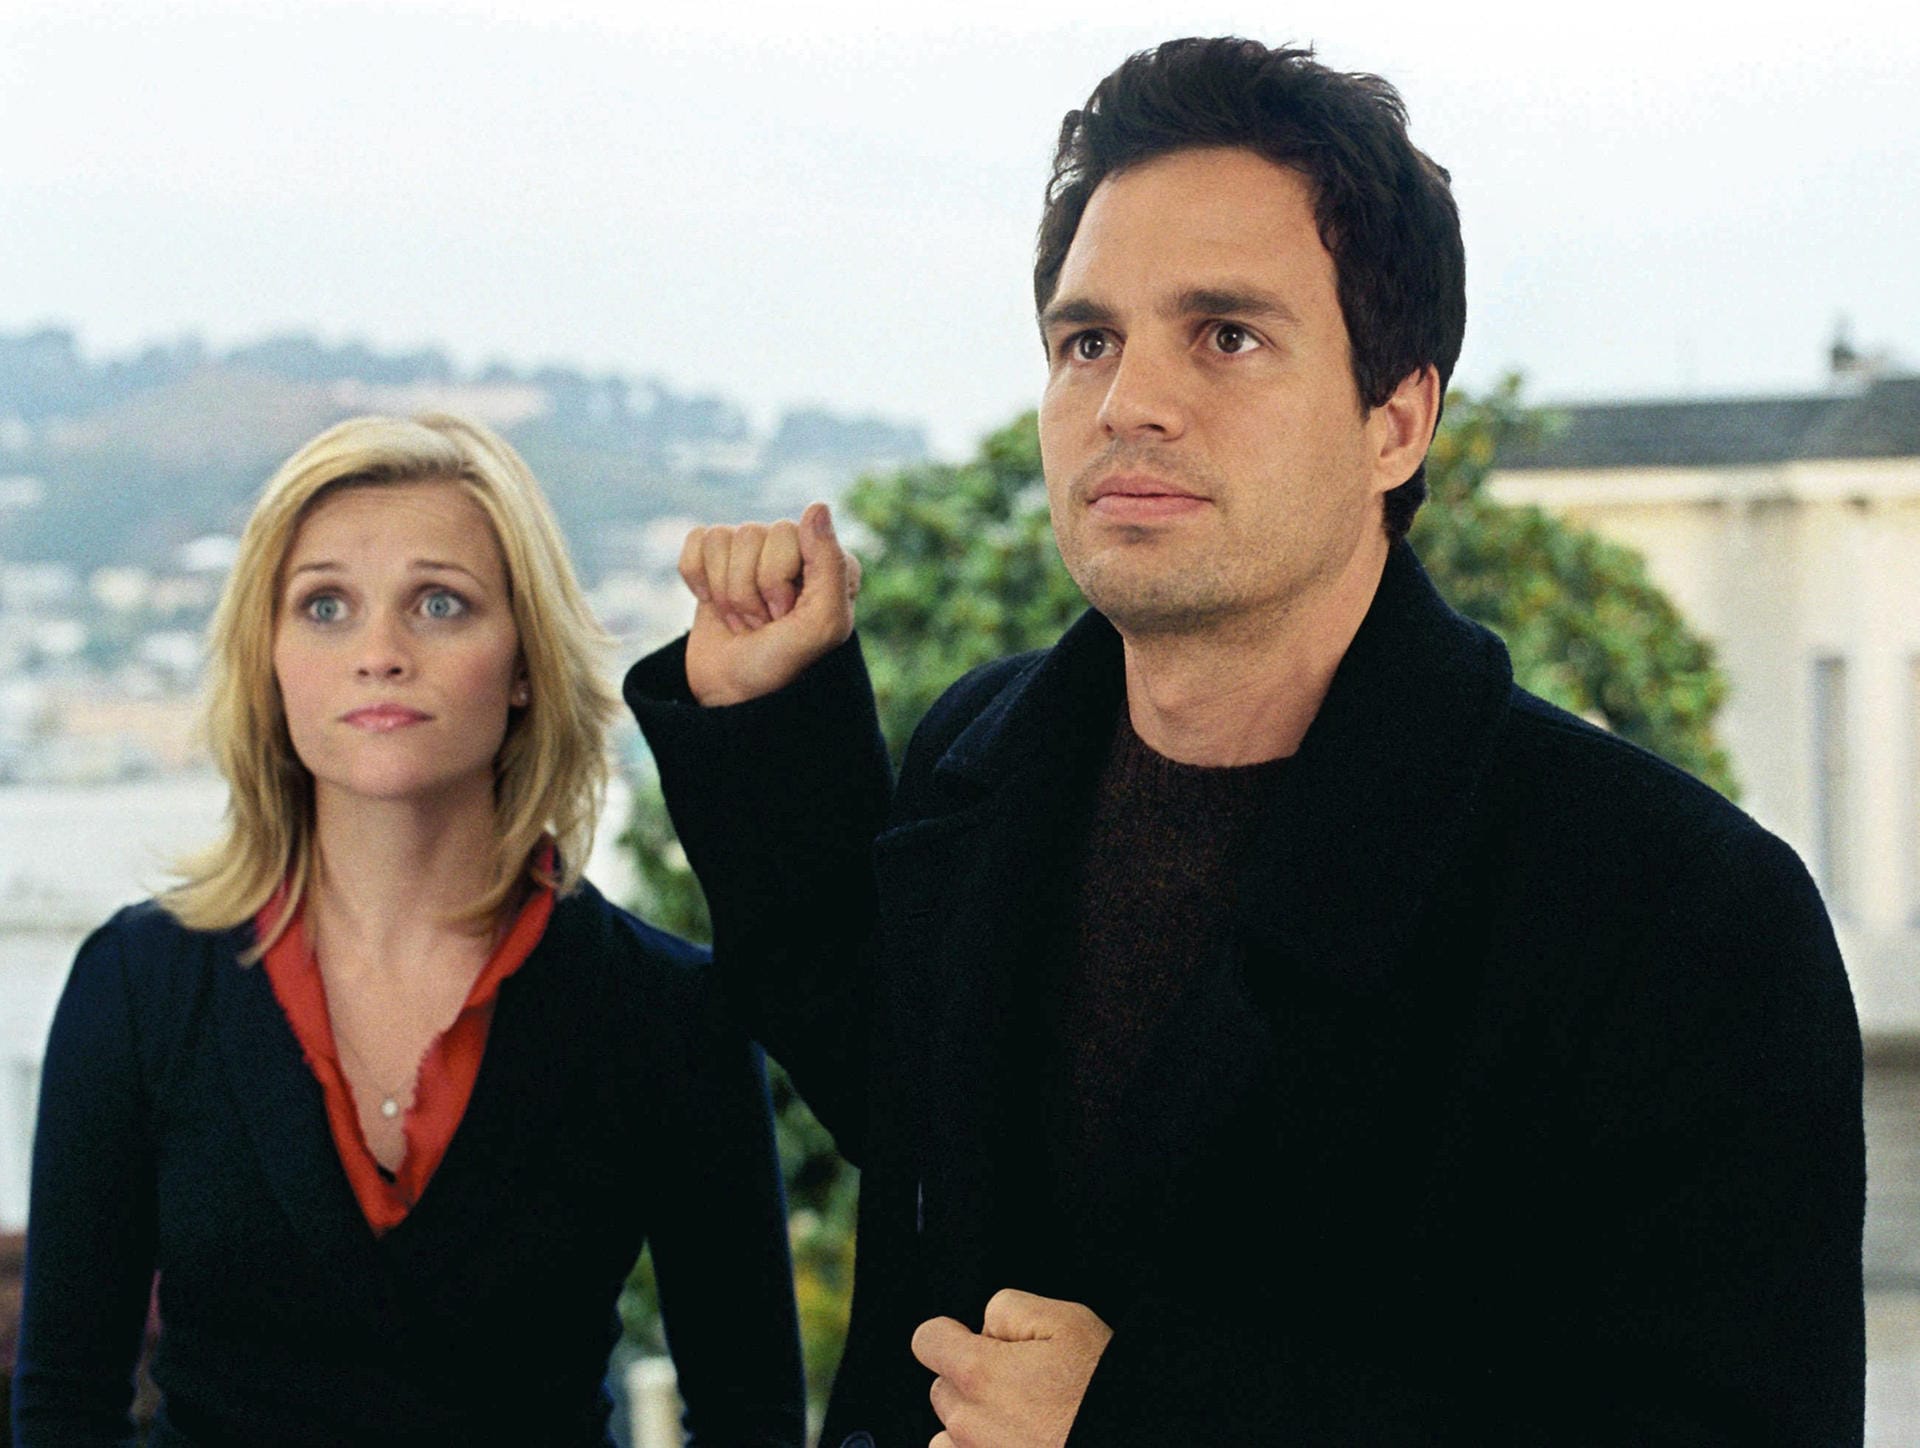 In "Solange du da bist" offenbaren sich Elizabeth (Reese Witherspoon) und David (Mark Ruffalo) in wundervollen Worten ihre Gefühle: "Wenn ich nicht bei dir bin, ist es, als würde ich nicht existieren."